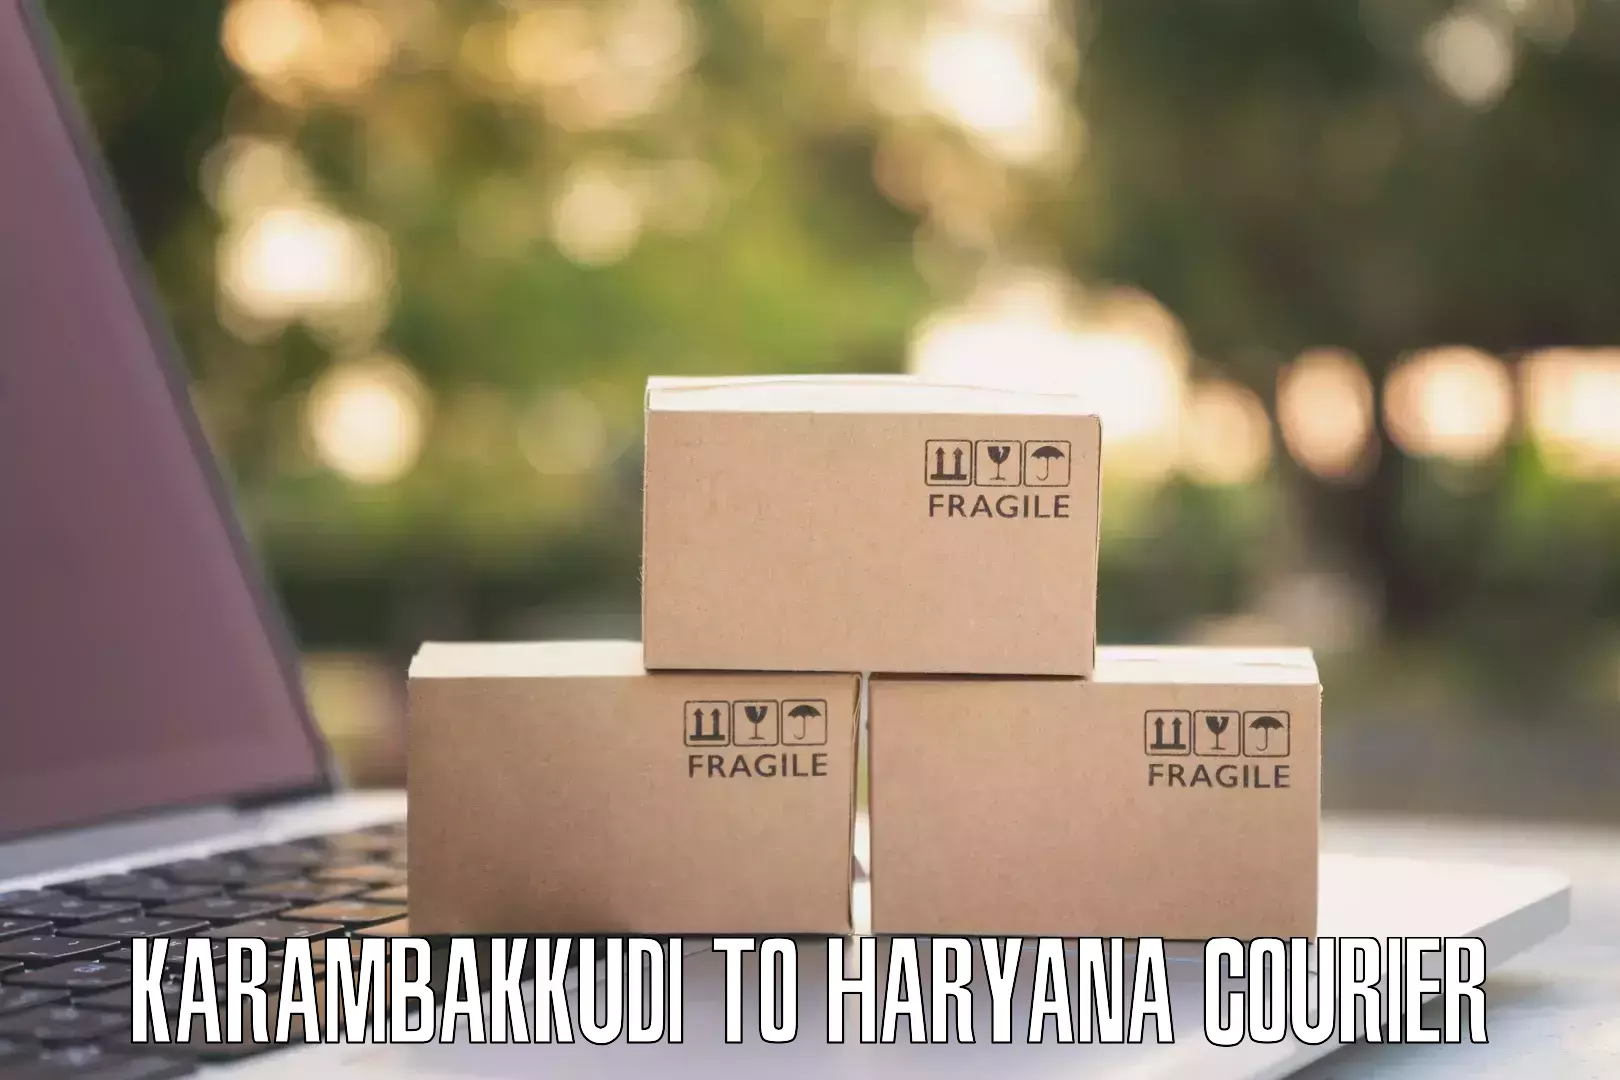 Online package tracking Karambakkudi to Faridabad